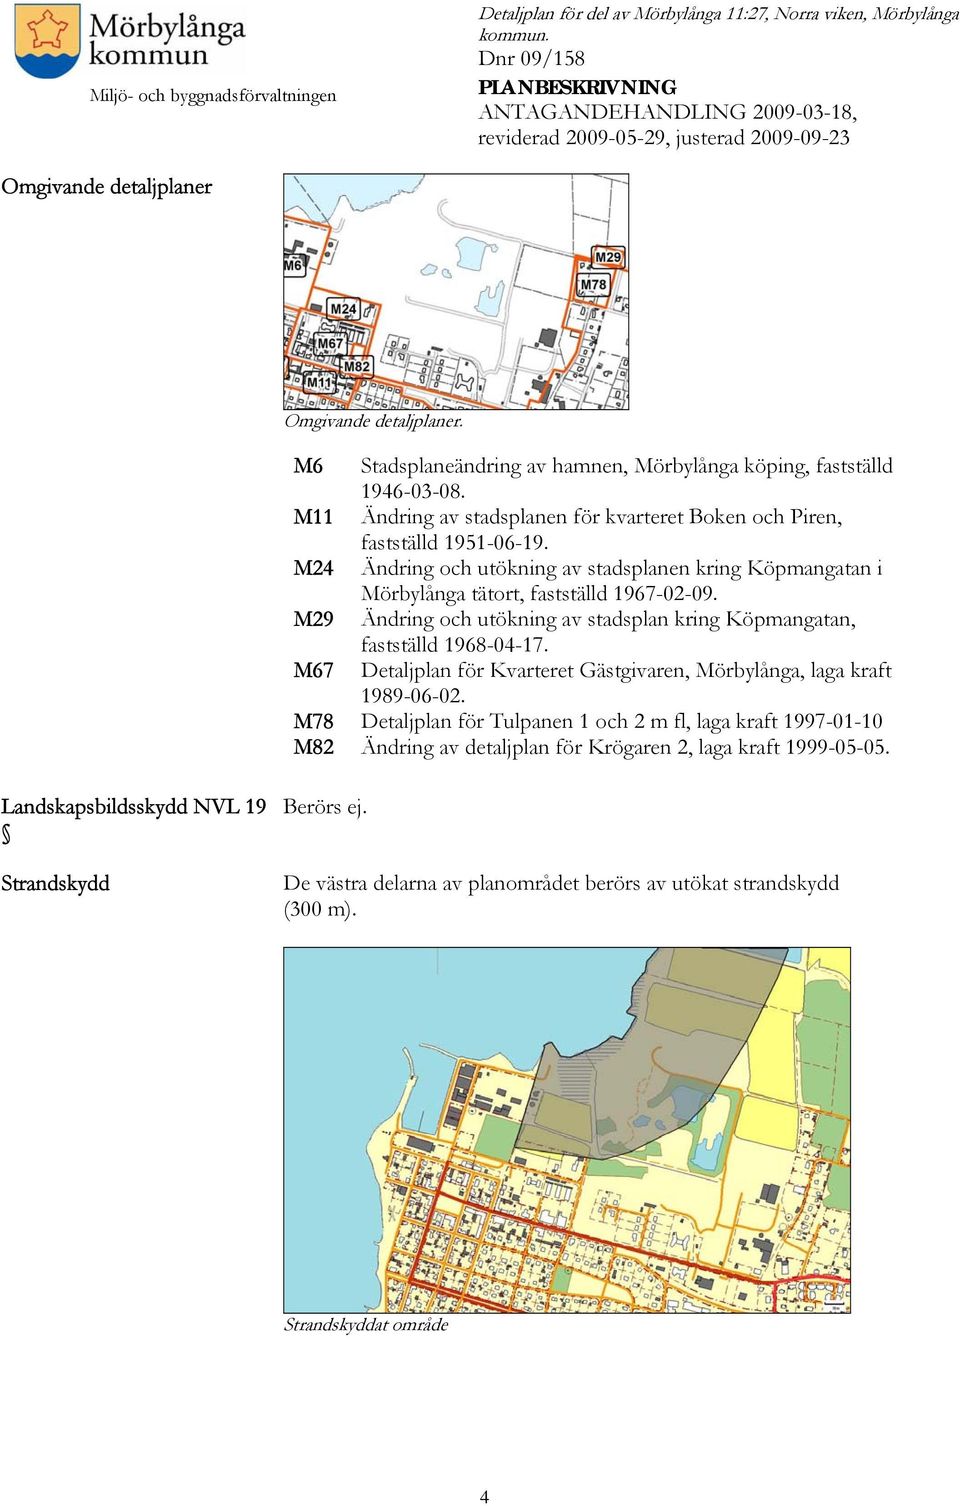 Ändring och utökning av stadsplan kring Köpmangatan, fastställd 1968-04-17. Detaljplan för Kvarteret Gästgivaren, Mörbylånga, laga kraft 1989-06-02.